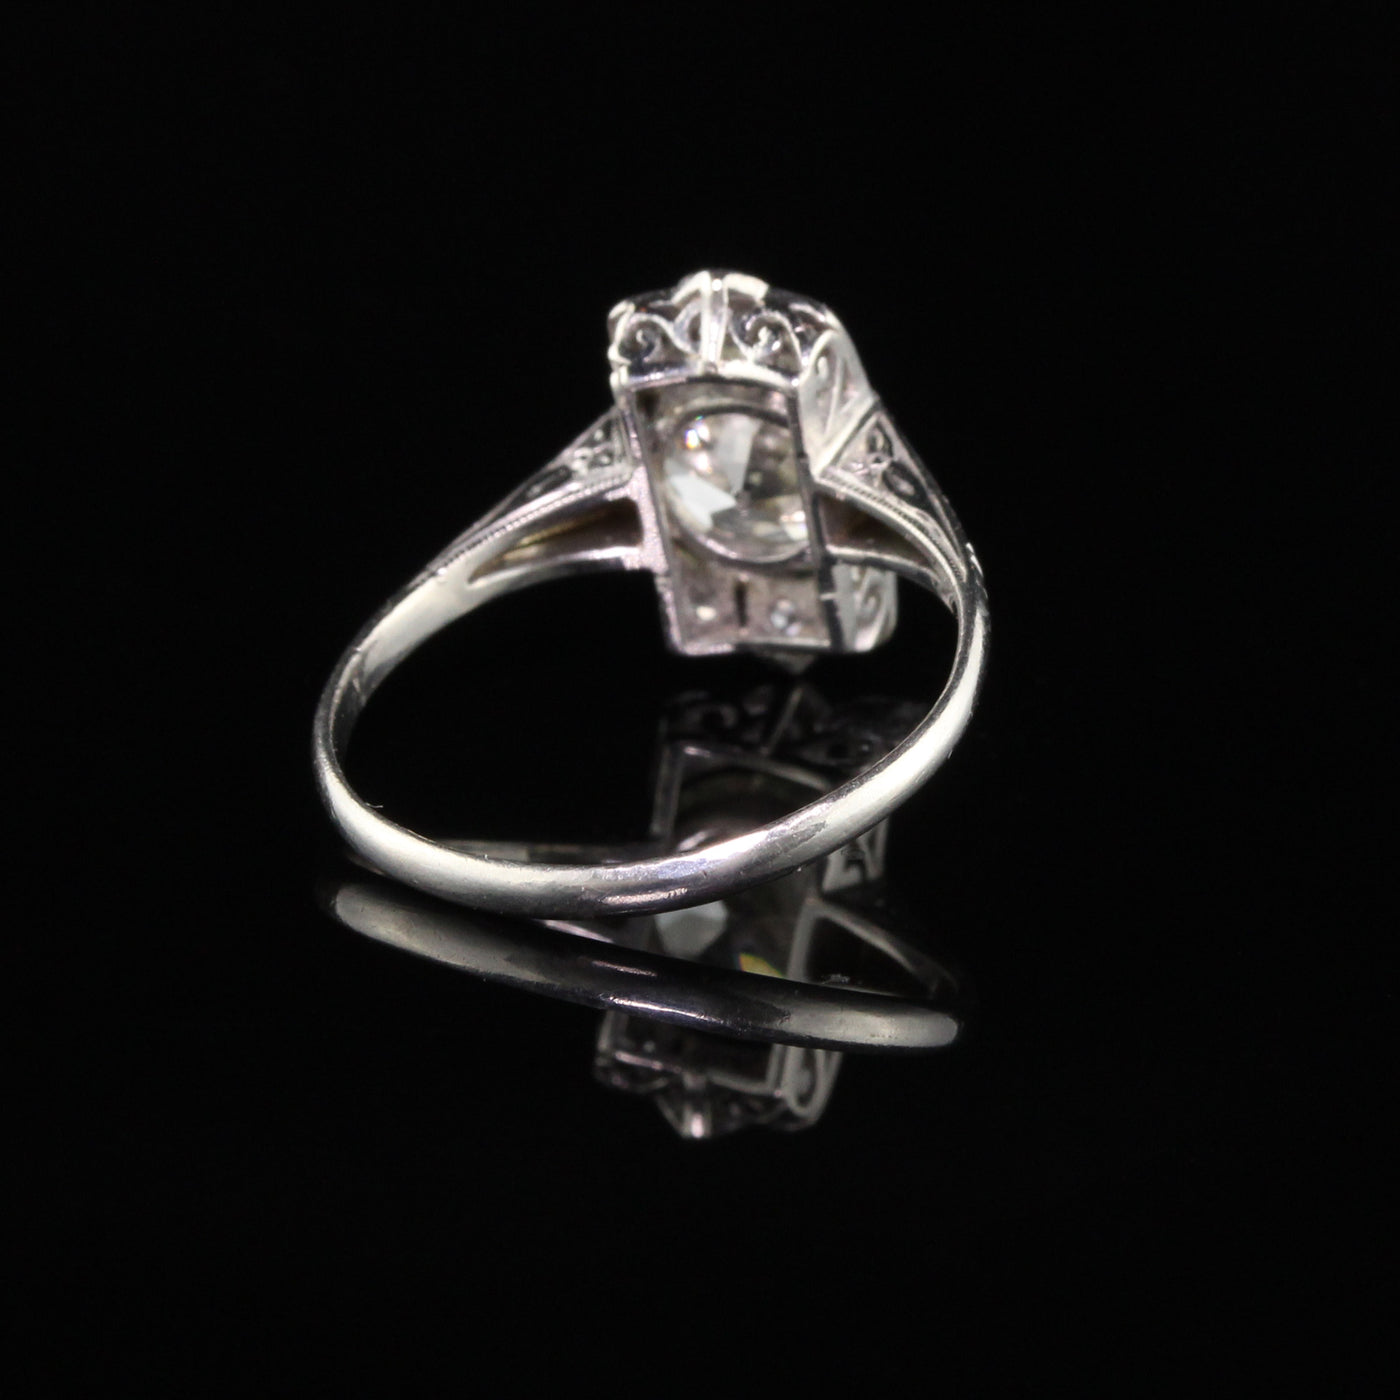 Antique Art Deco Platinum Old European Cut Diamond Engagement Ring